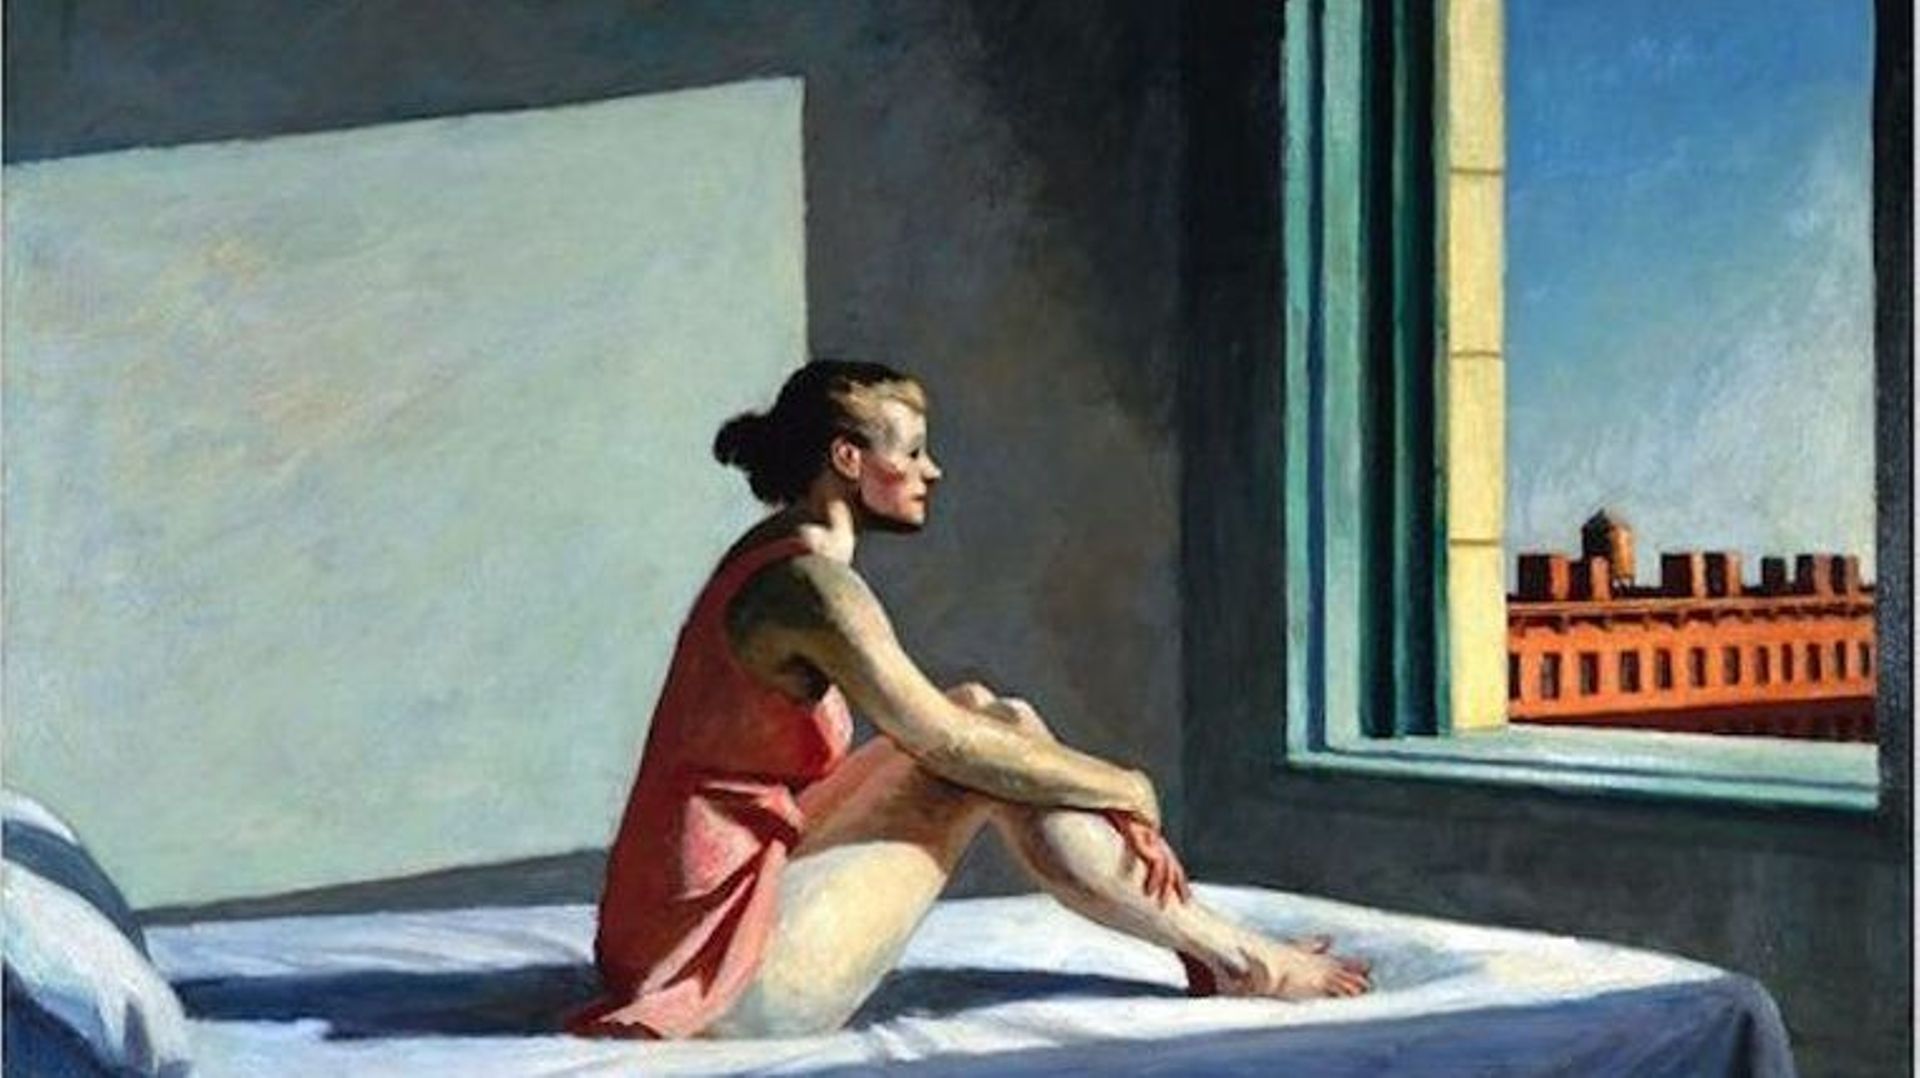 "Morning sun", Edward Hopper, 1952 